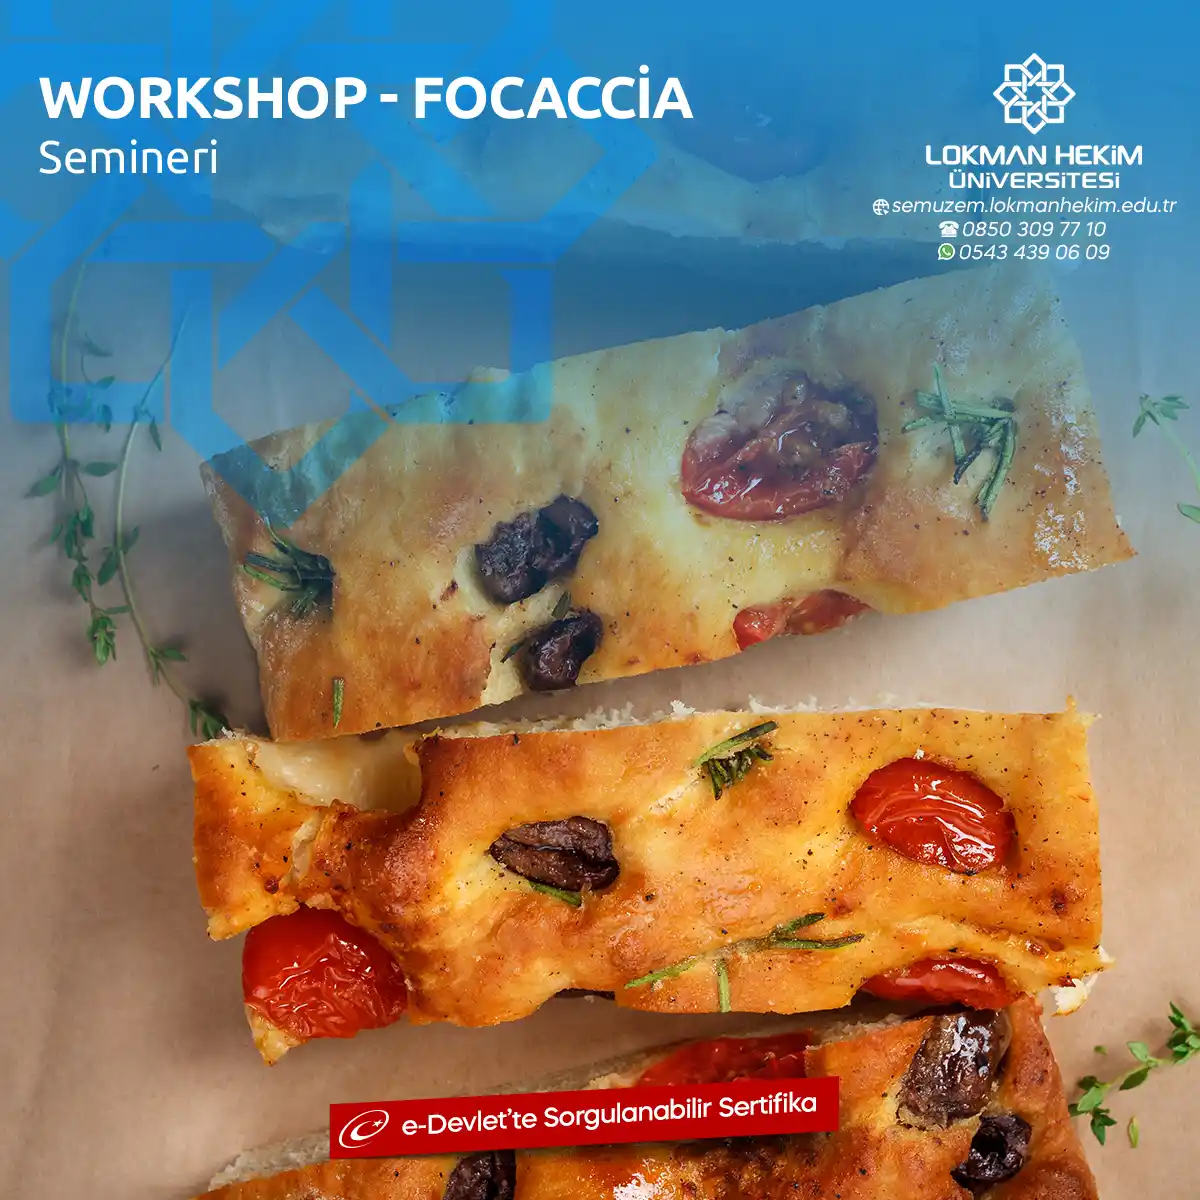 Workshop - Focaccia Semineri